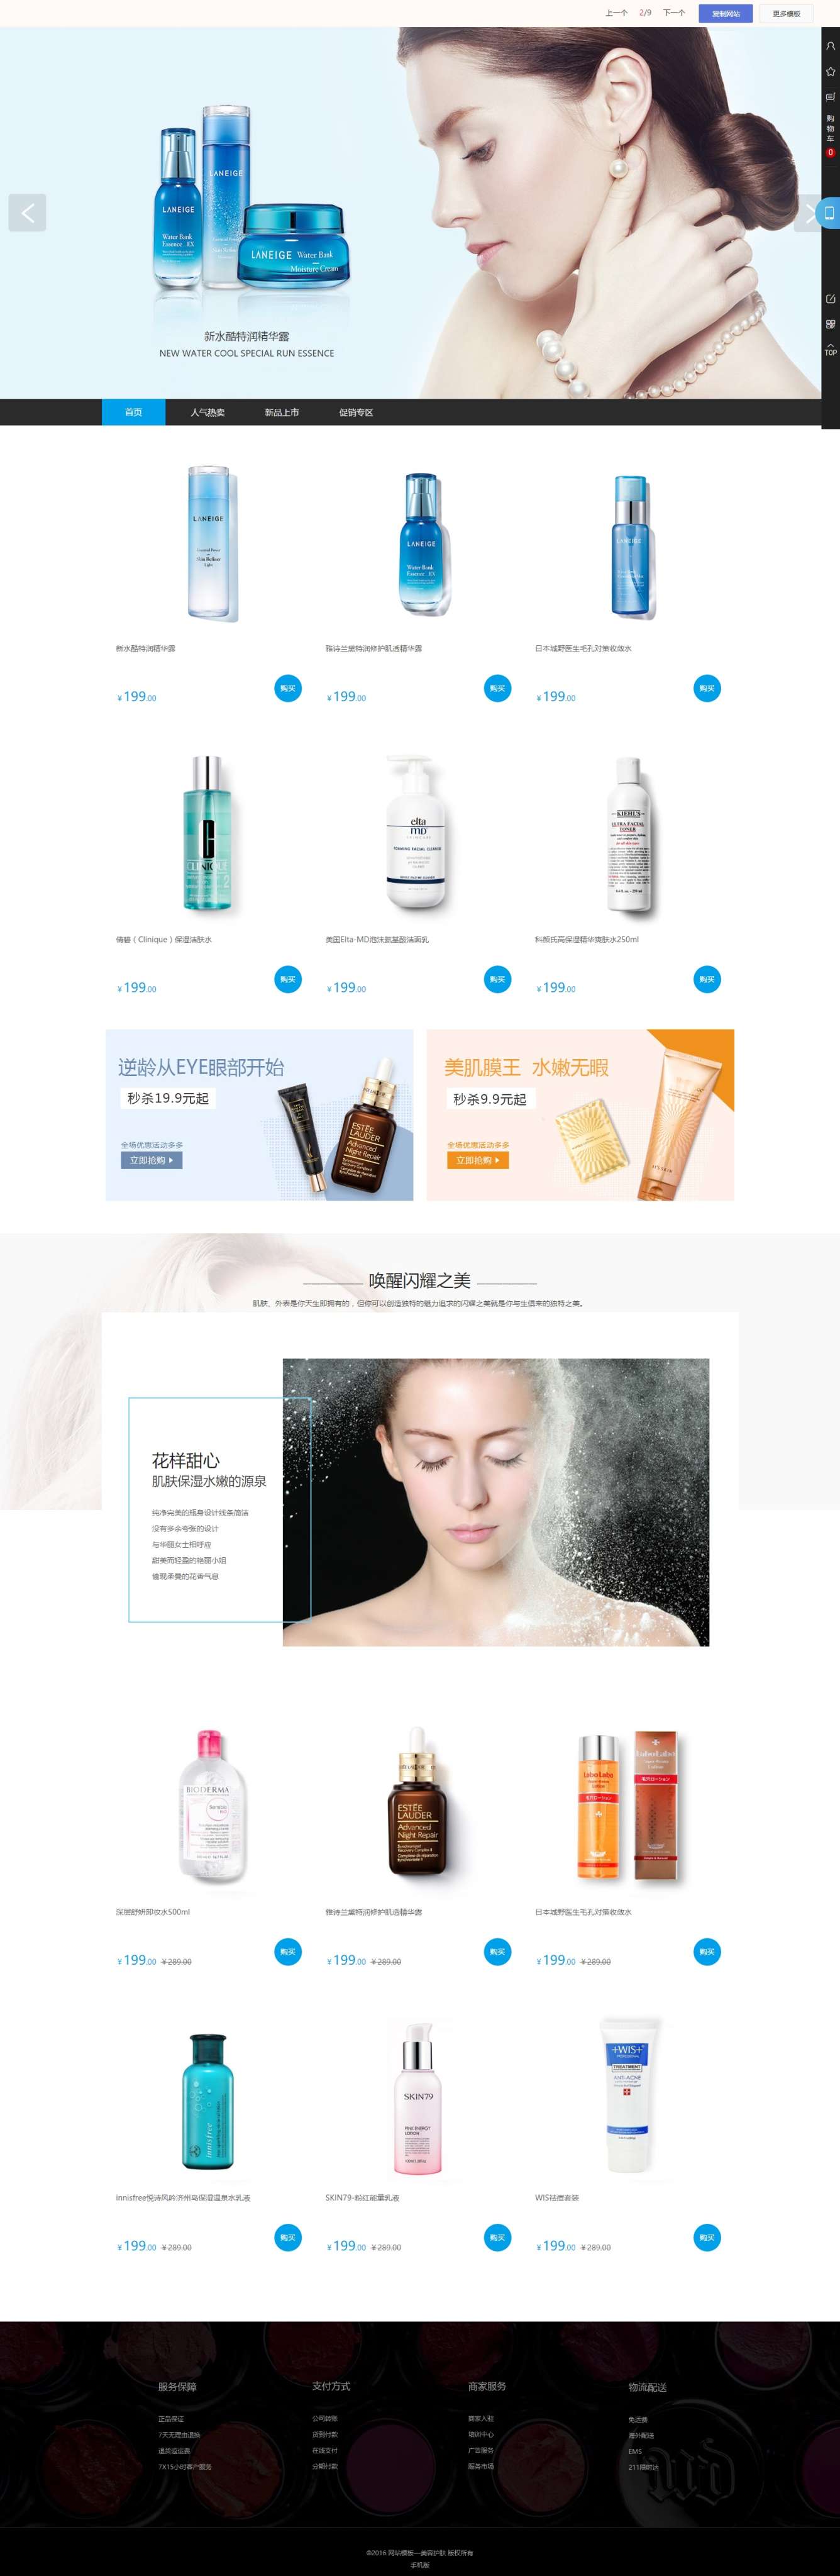 化妆品公司网络营销计划 1